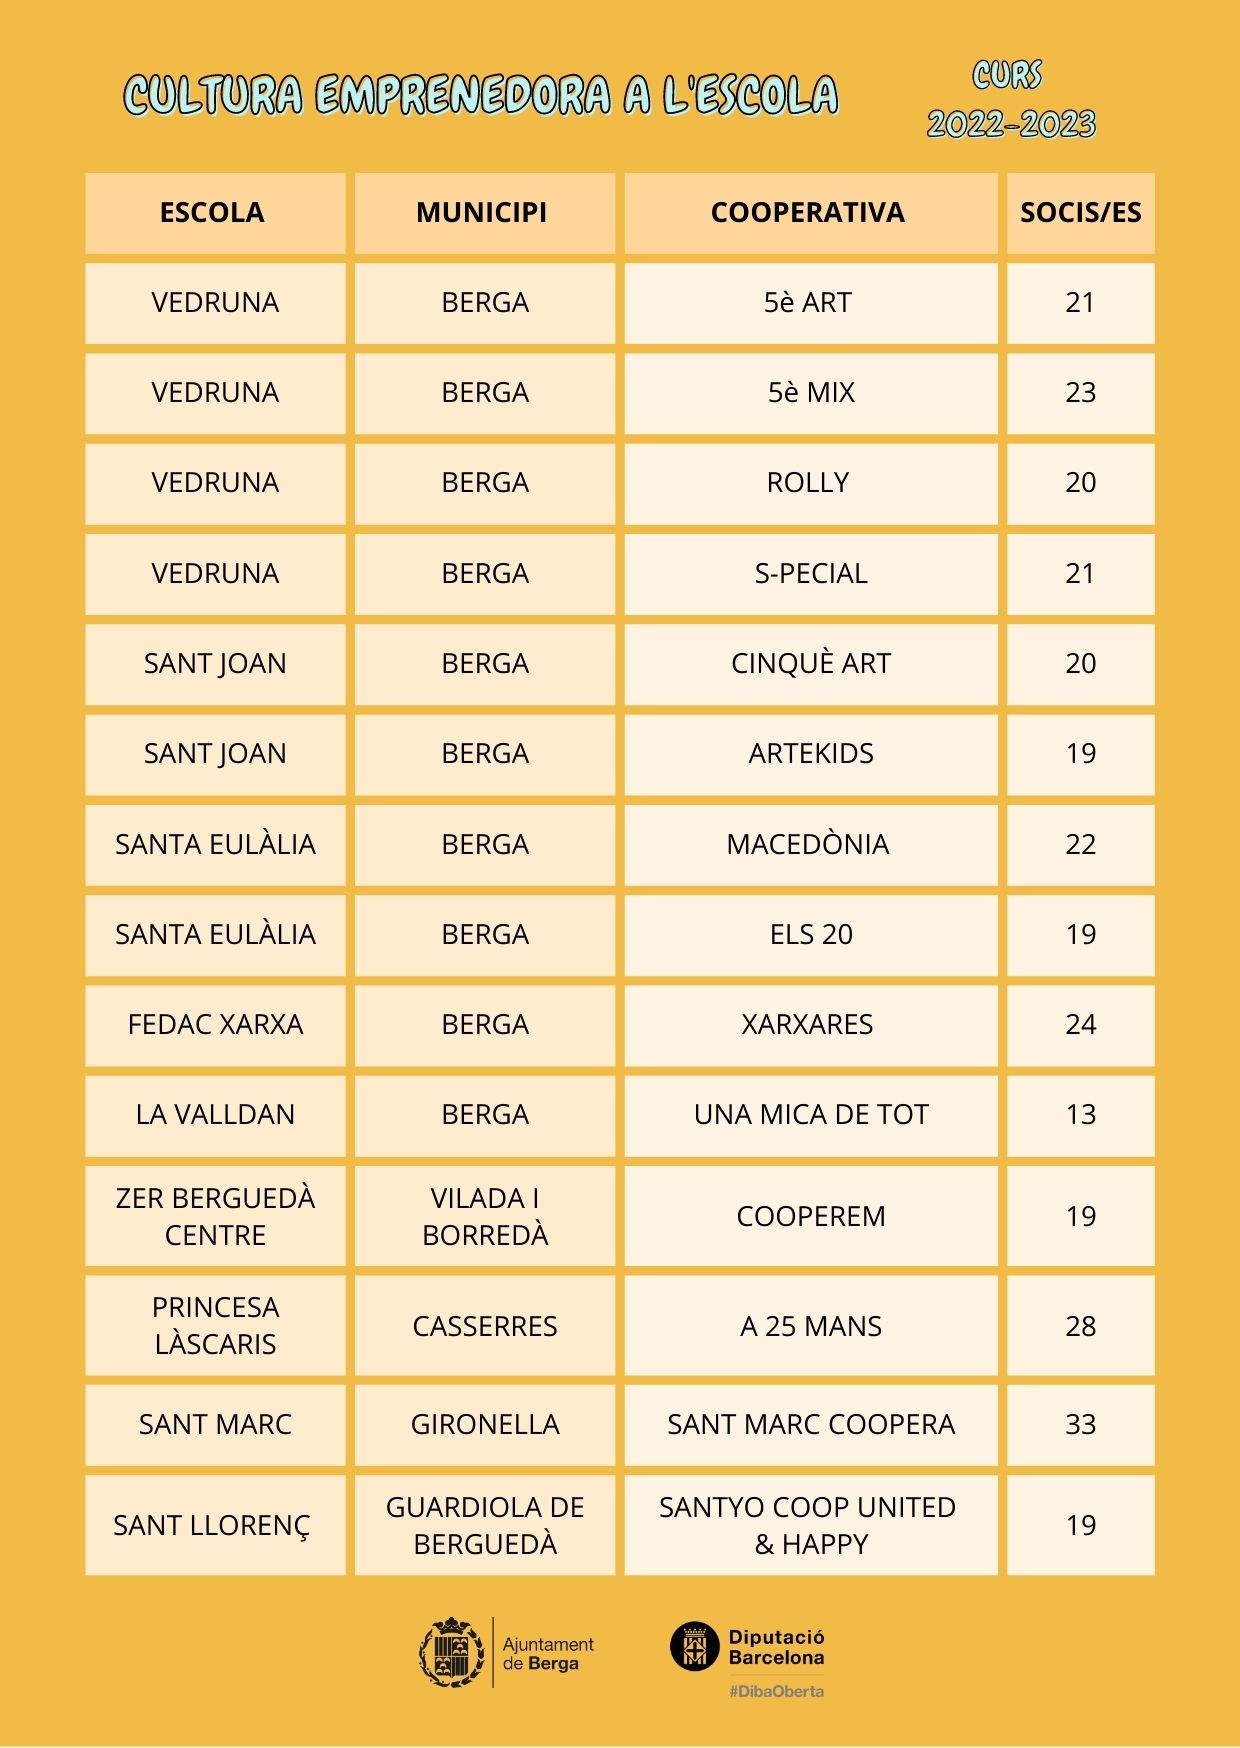 Llistat de cooperatives participants en el mercat d'enguany